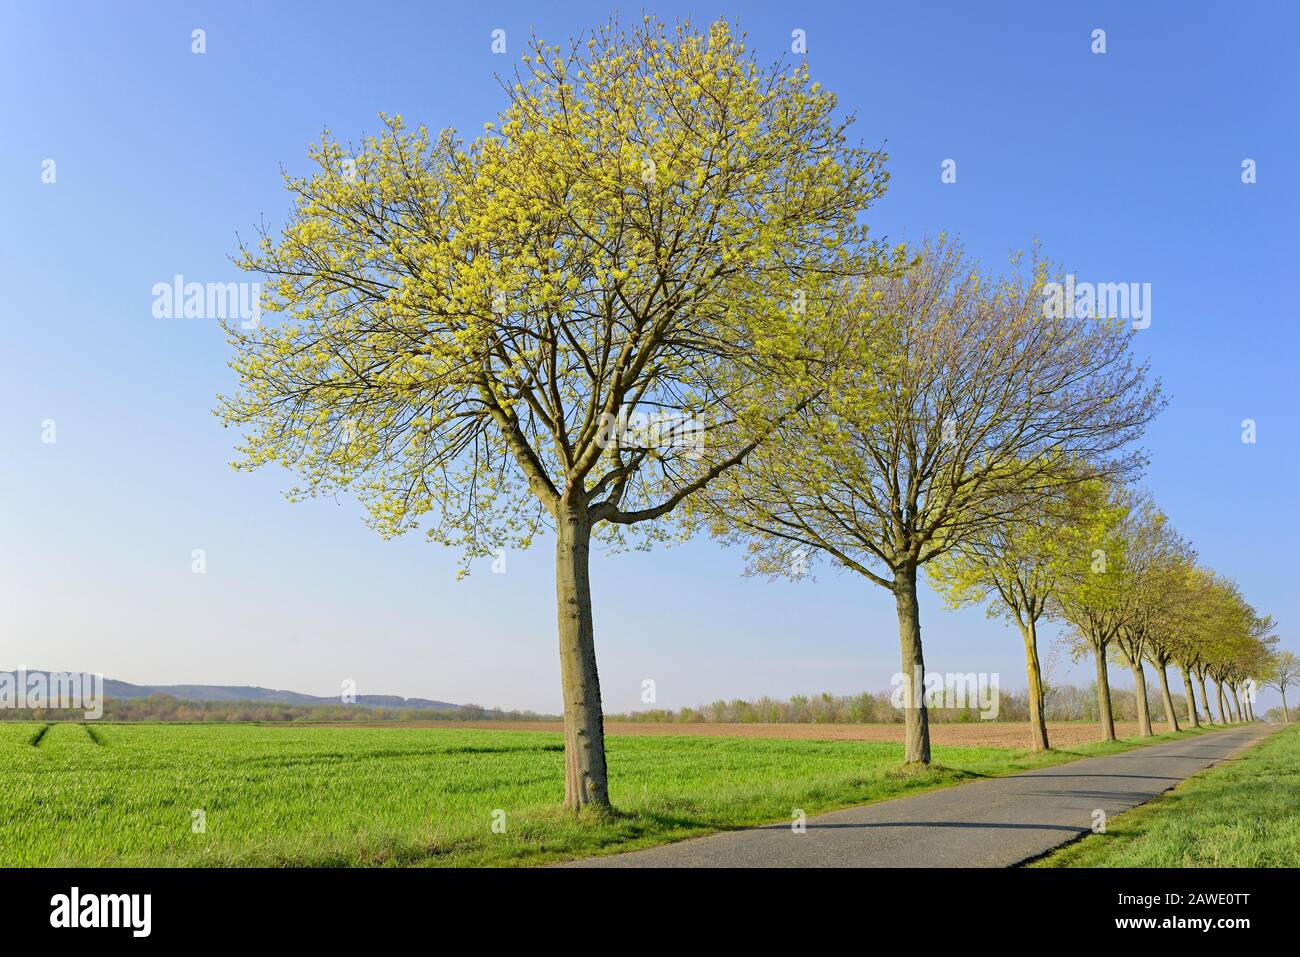 Érable (Acer), rangée d'arbres au printemps avec ciel bleu, saison de floraison, Rhénanie-du-Nord-Westphalie, Allemagne Banque D'Images